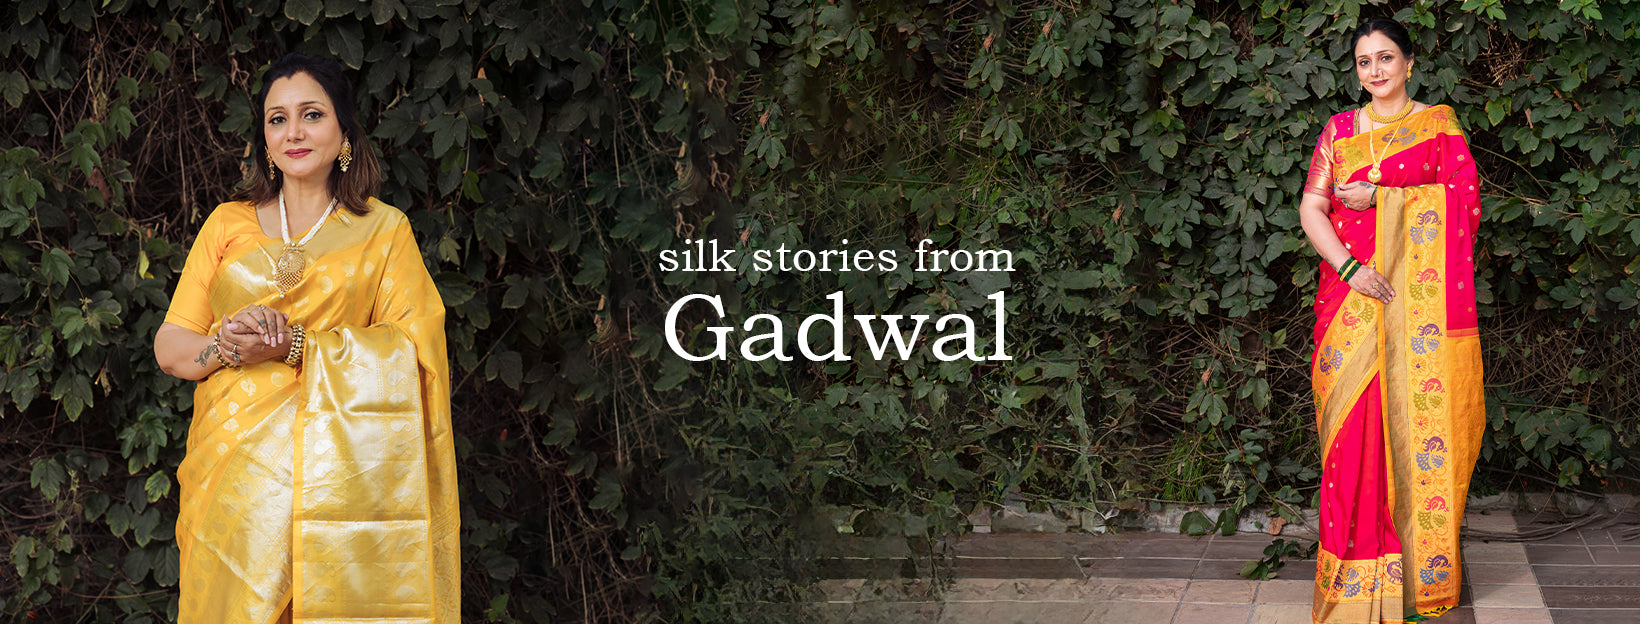 Buy Pure Gadwal Silk/Pattu Sarees Online | Tulsi Silks